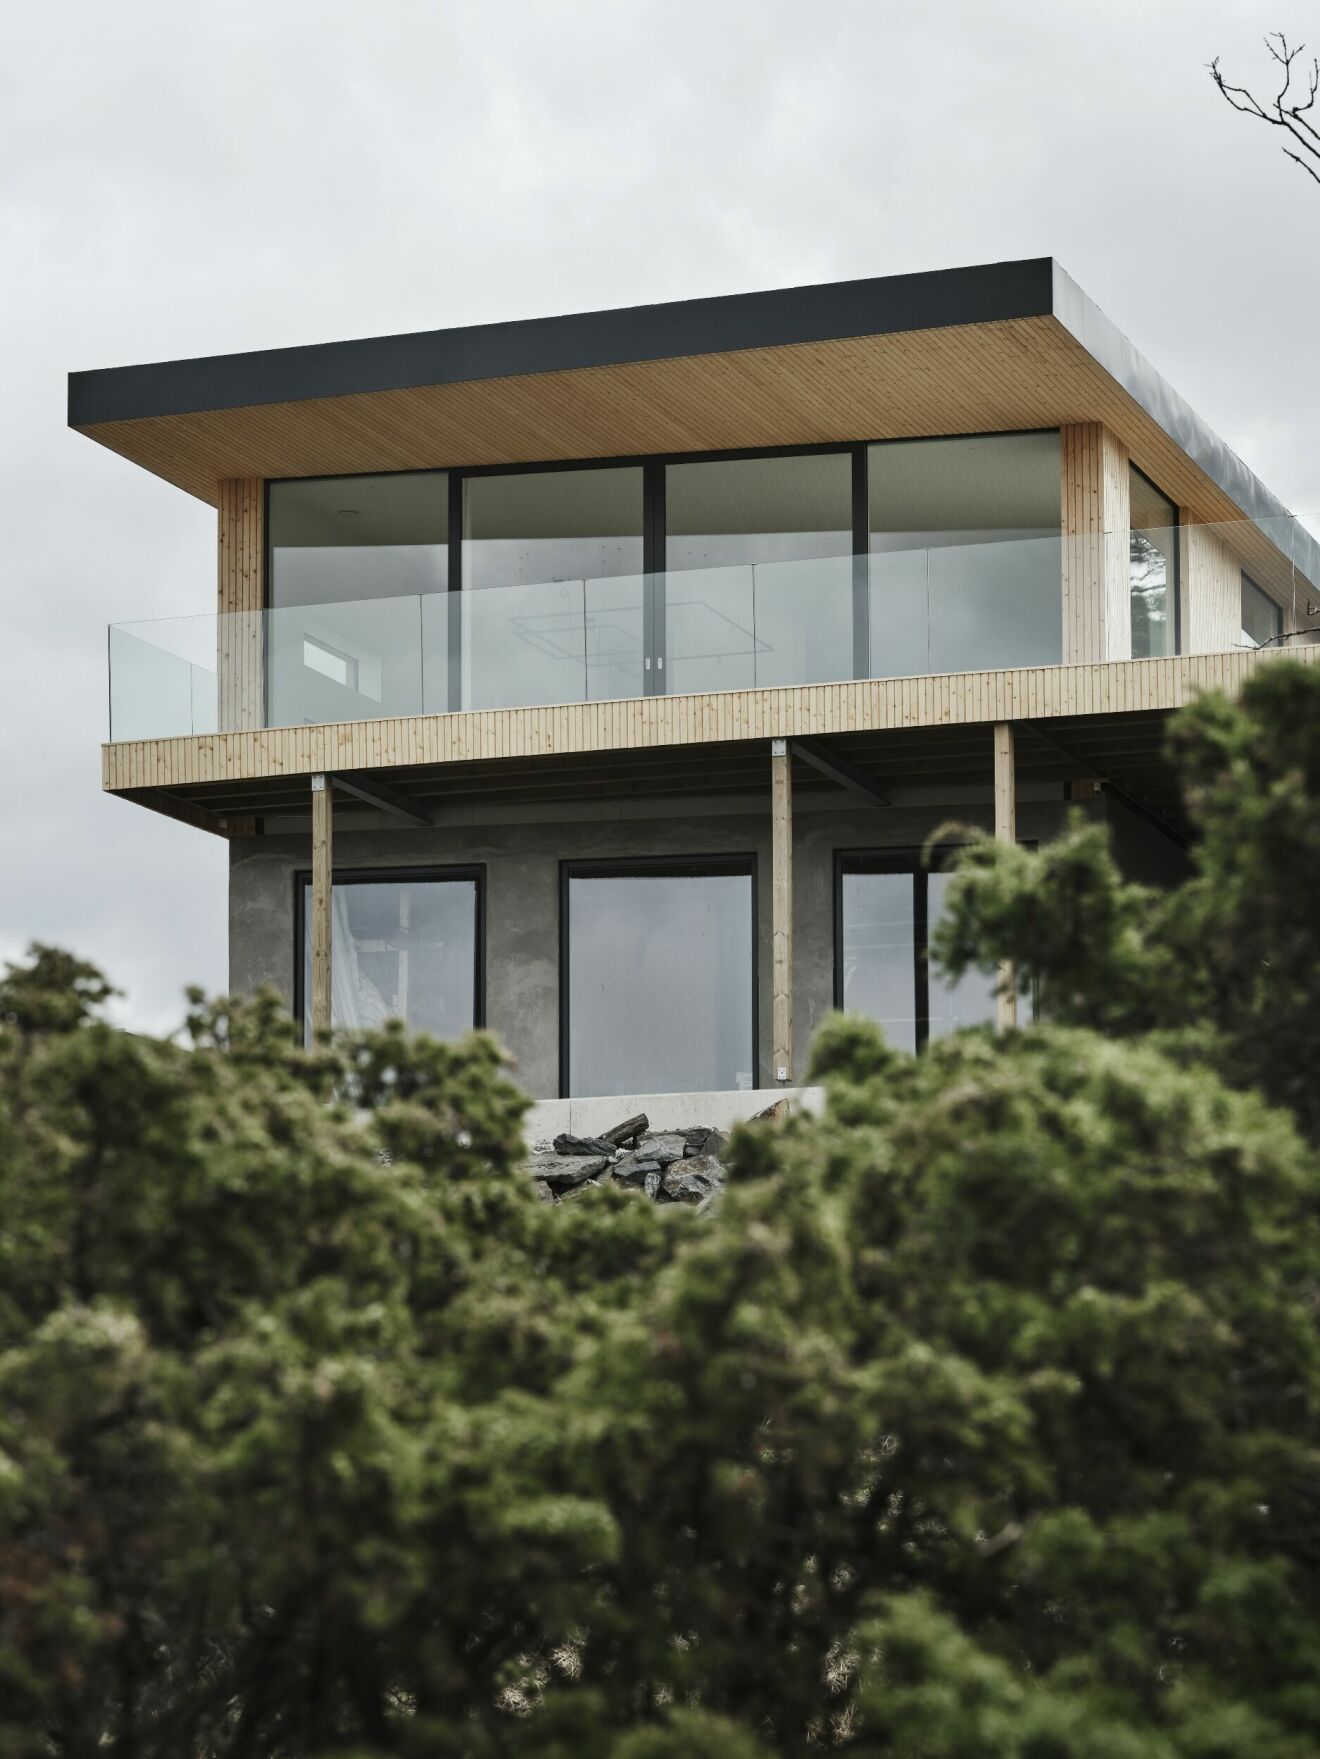 Arkitektritat hus inspirerat av Case study-husen i Kalifornien.